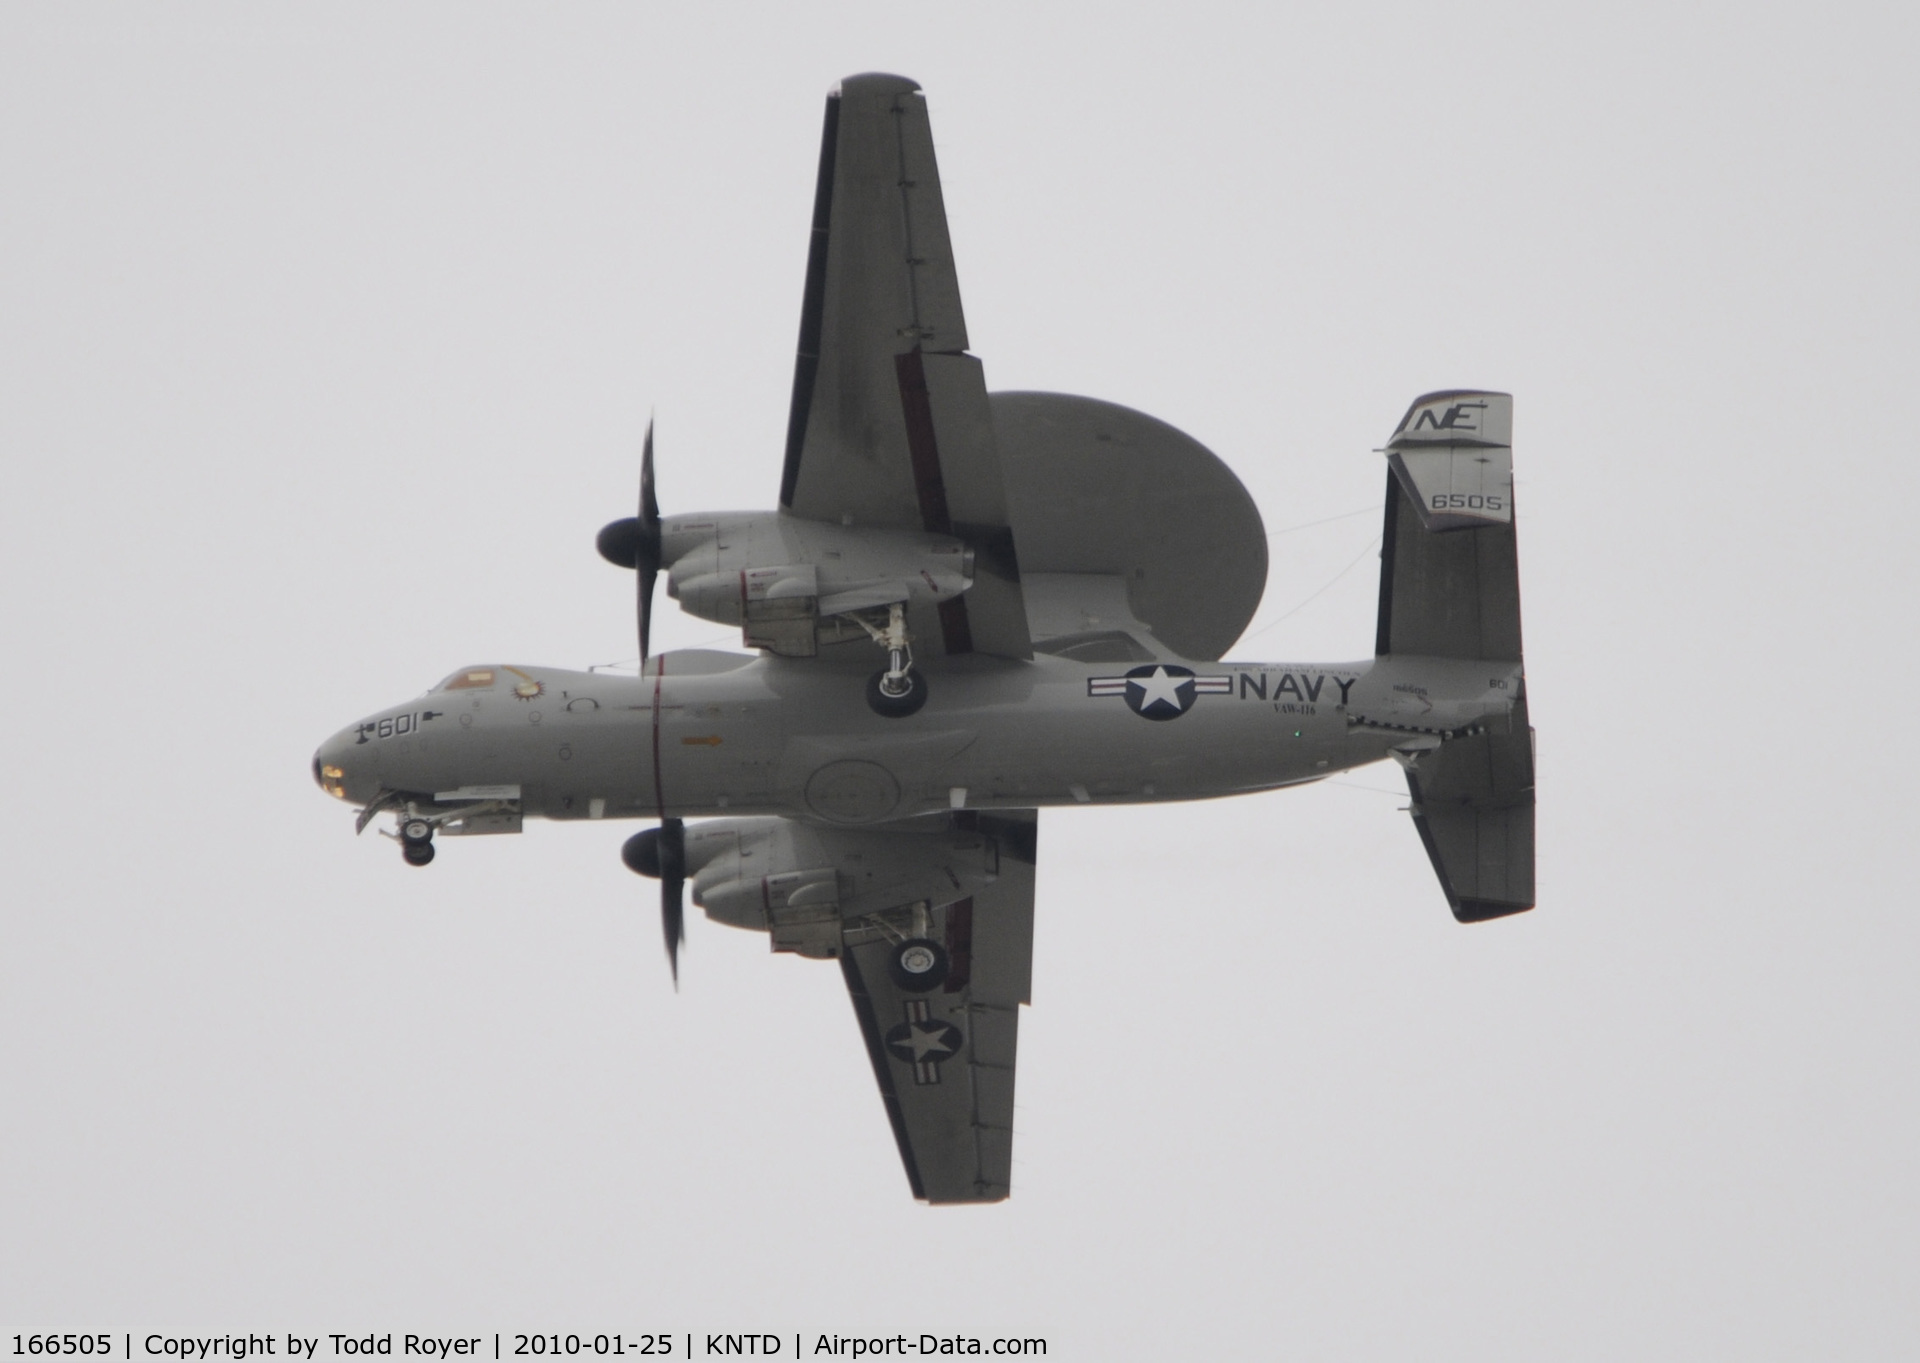 166505, Northrop Grumman E-2C Hawkeye 2000 (G-123) C/N Not found 166505, From the backyard